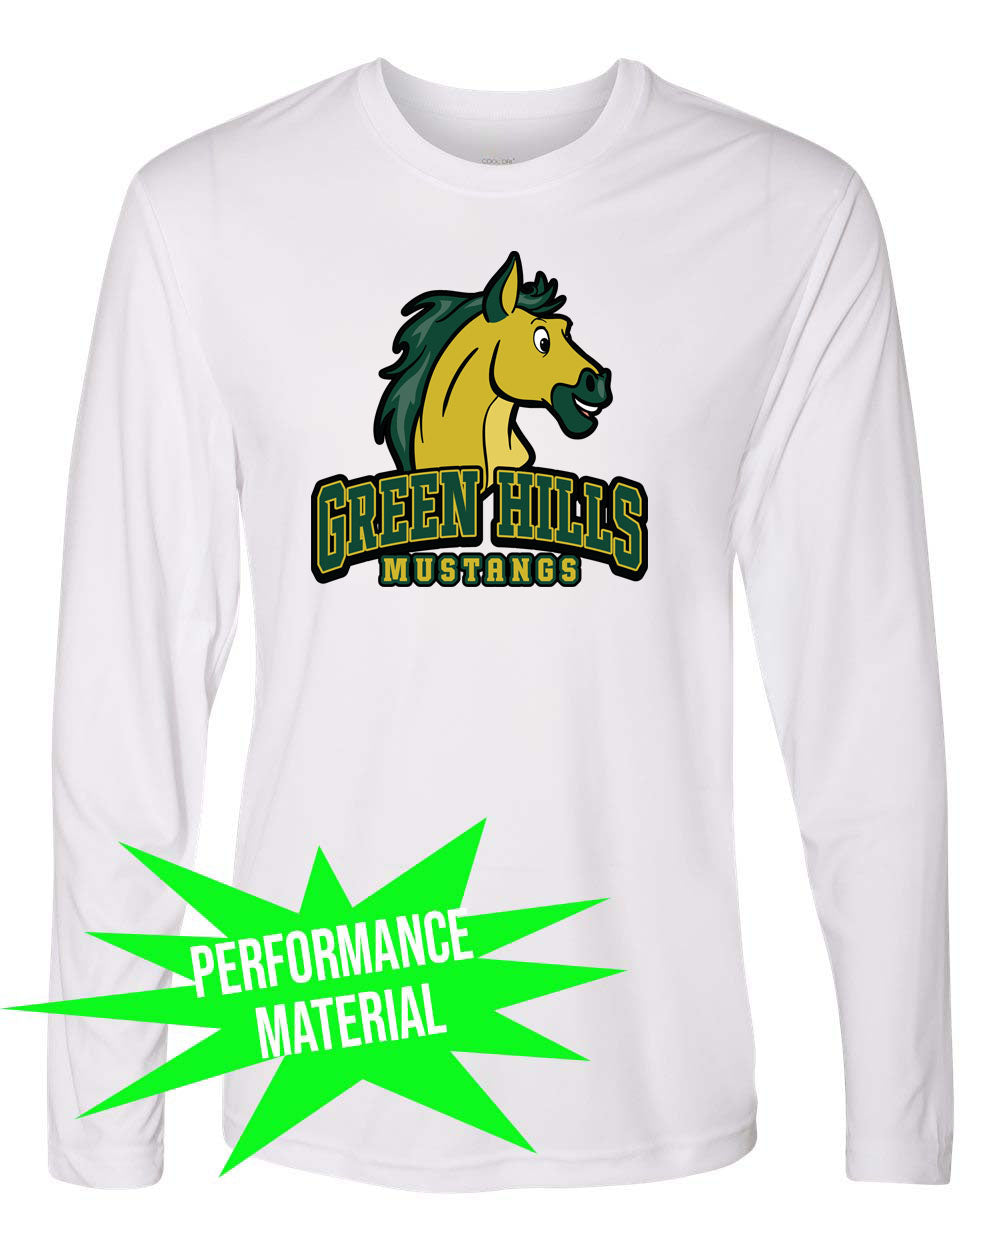 Green Hills Performance Material Long Sleeve Shirt Design 14